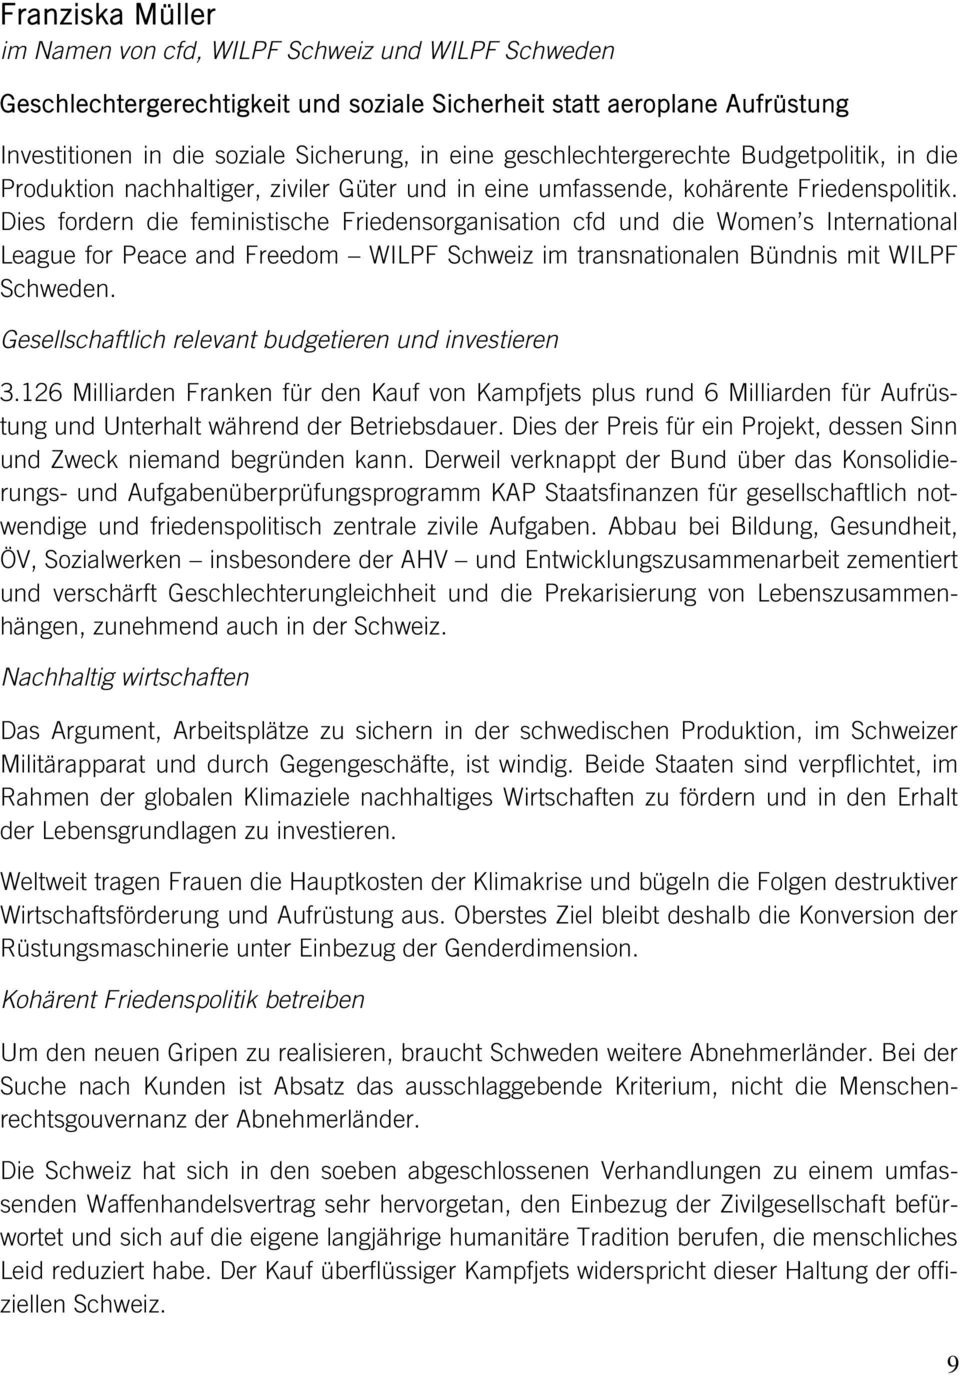 Dies fordern die feministische Friedensorganisation cfd und die Women s International League for Peace and Freedom WILPF Schweiz im transnationalen Bündnis mit WILPF Schweden.